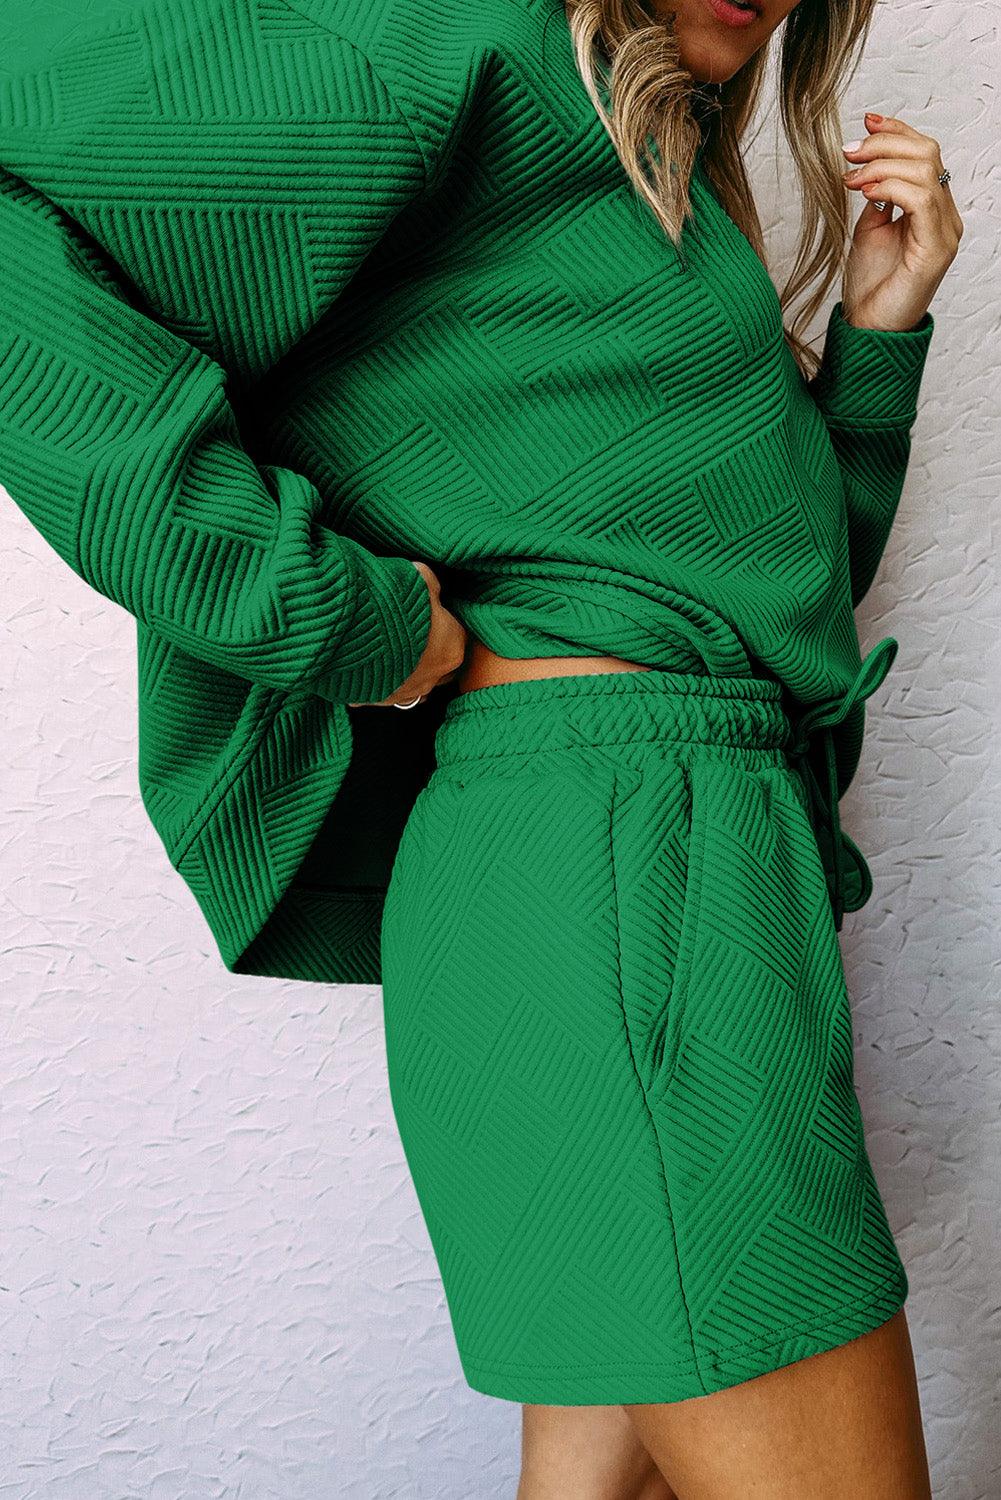 Green Textured Long Sleeve Top and Drawstring Shorts Set - L & M Kee, LLC